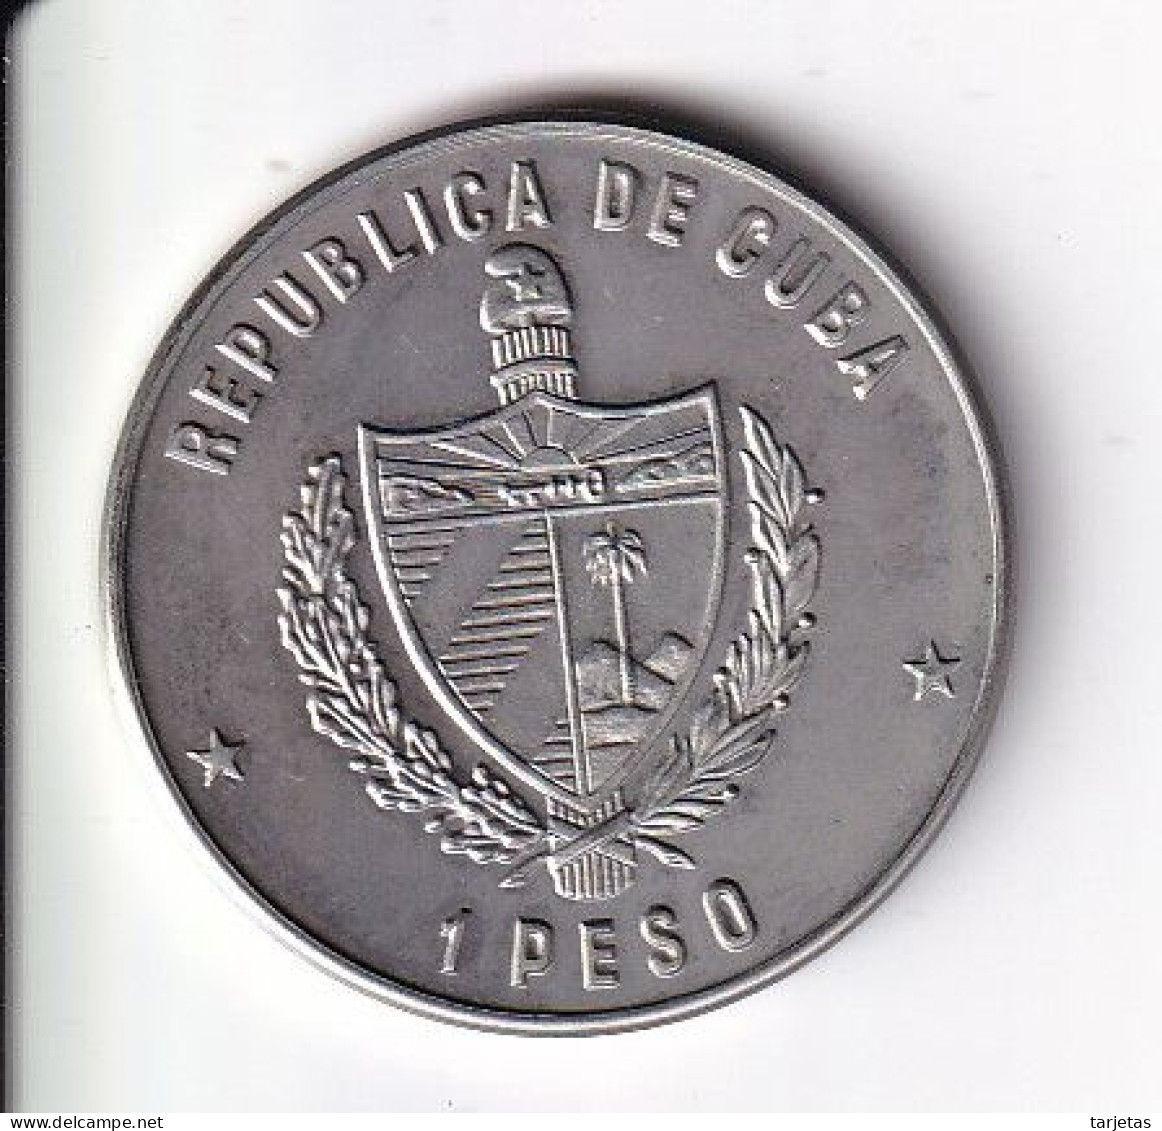 MONEDA DE CUBA DE 1 PESO DEL AÑO 1981 DEL TOCORORO (COIN) (NUEVA - UNC) - Kuba